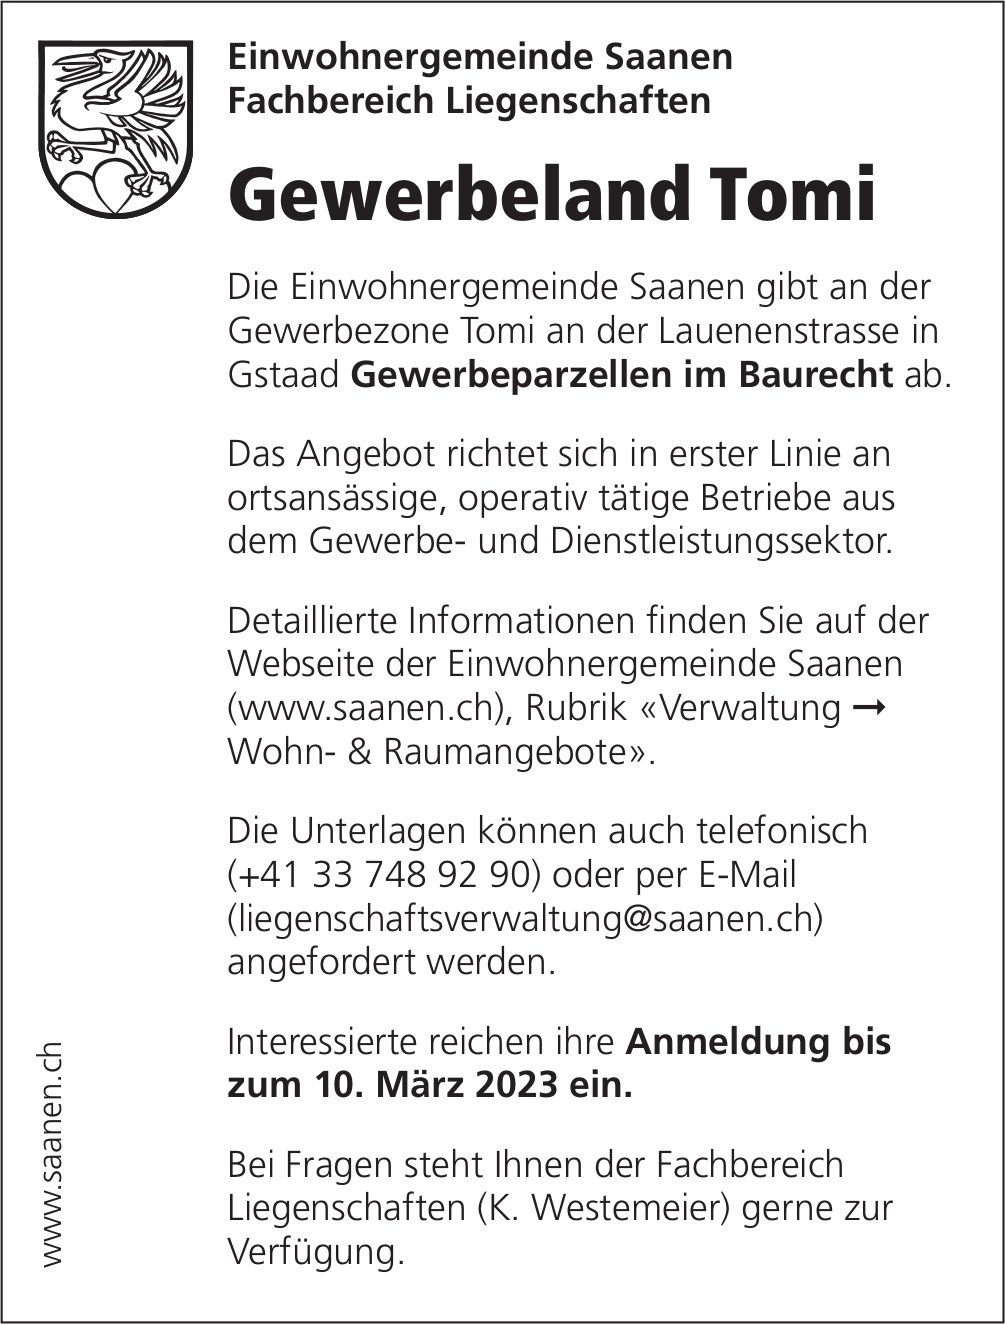 Gewerbeland Tomi, Gstaad, zu verkaufen